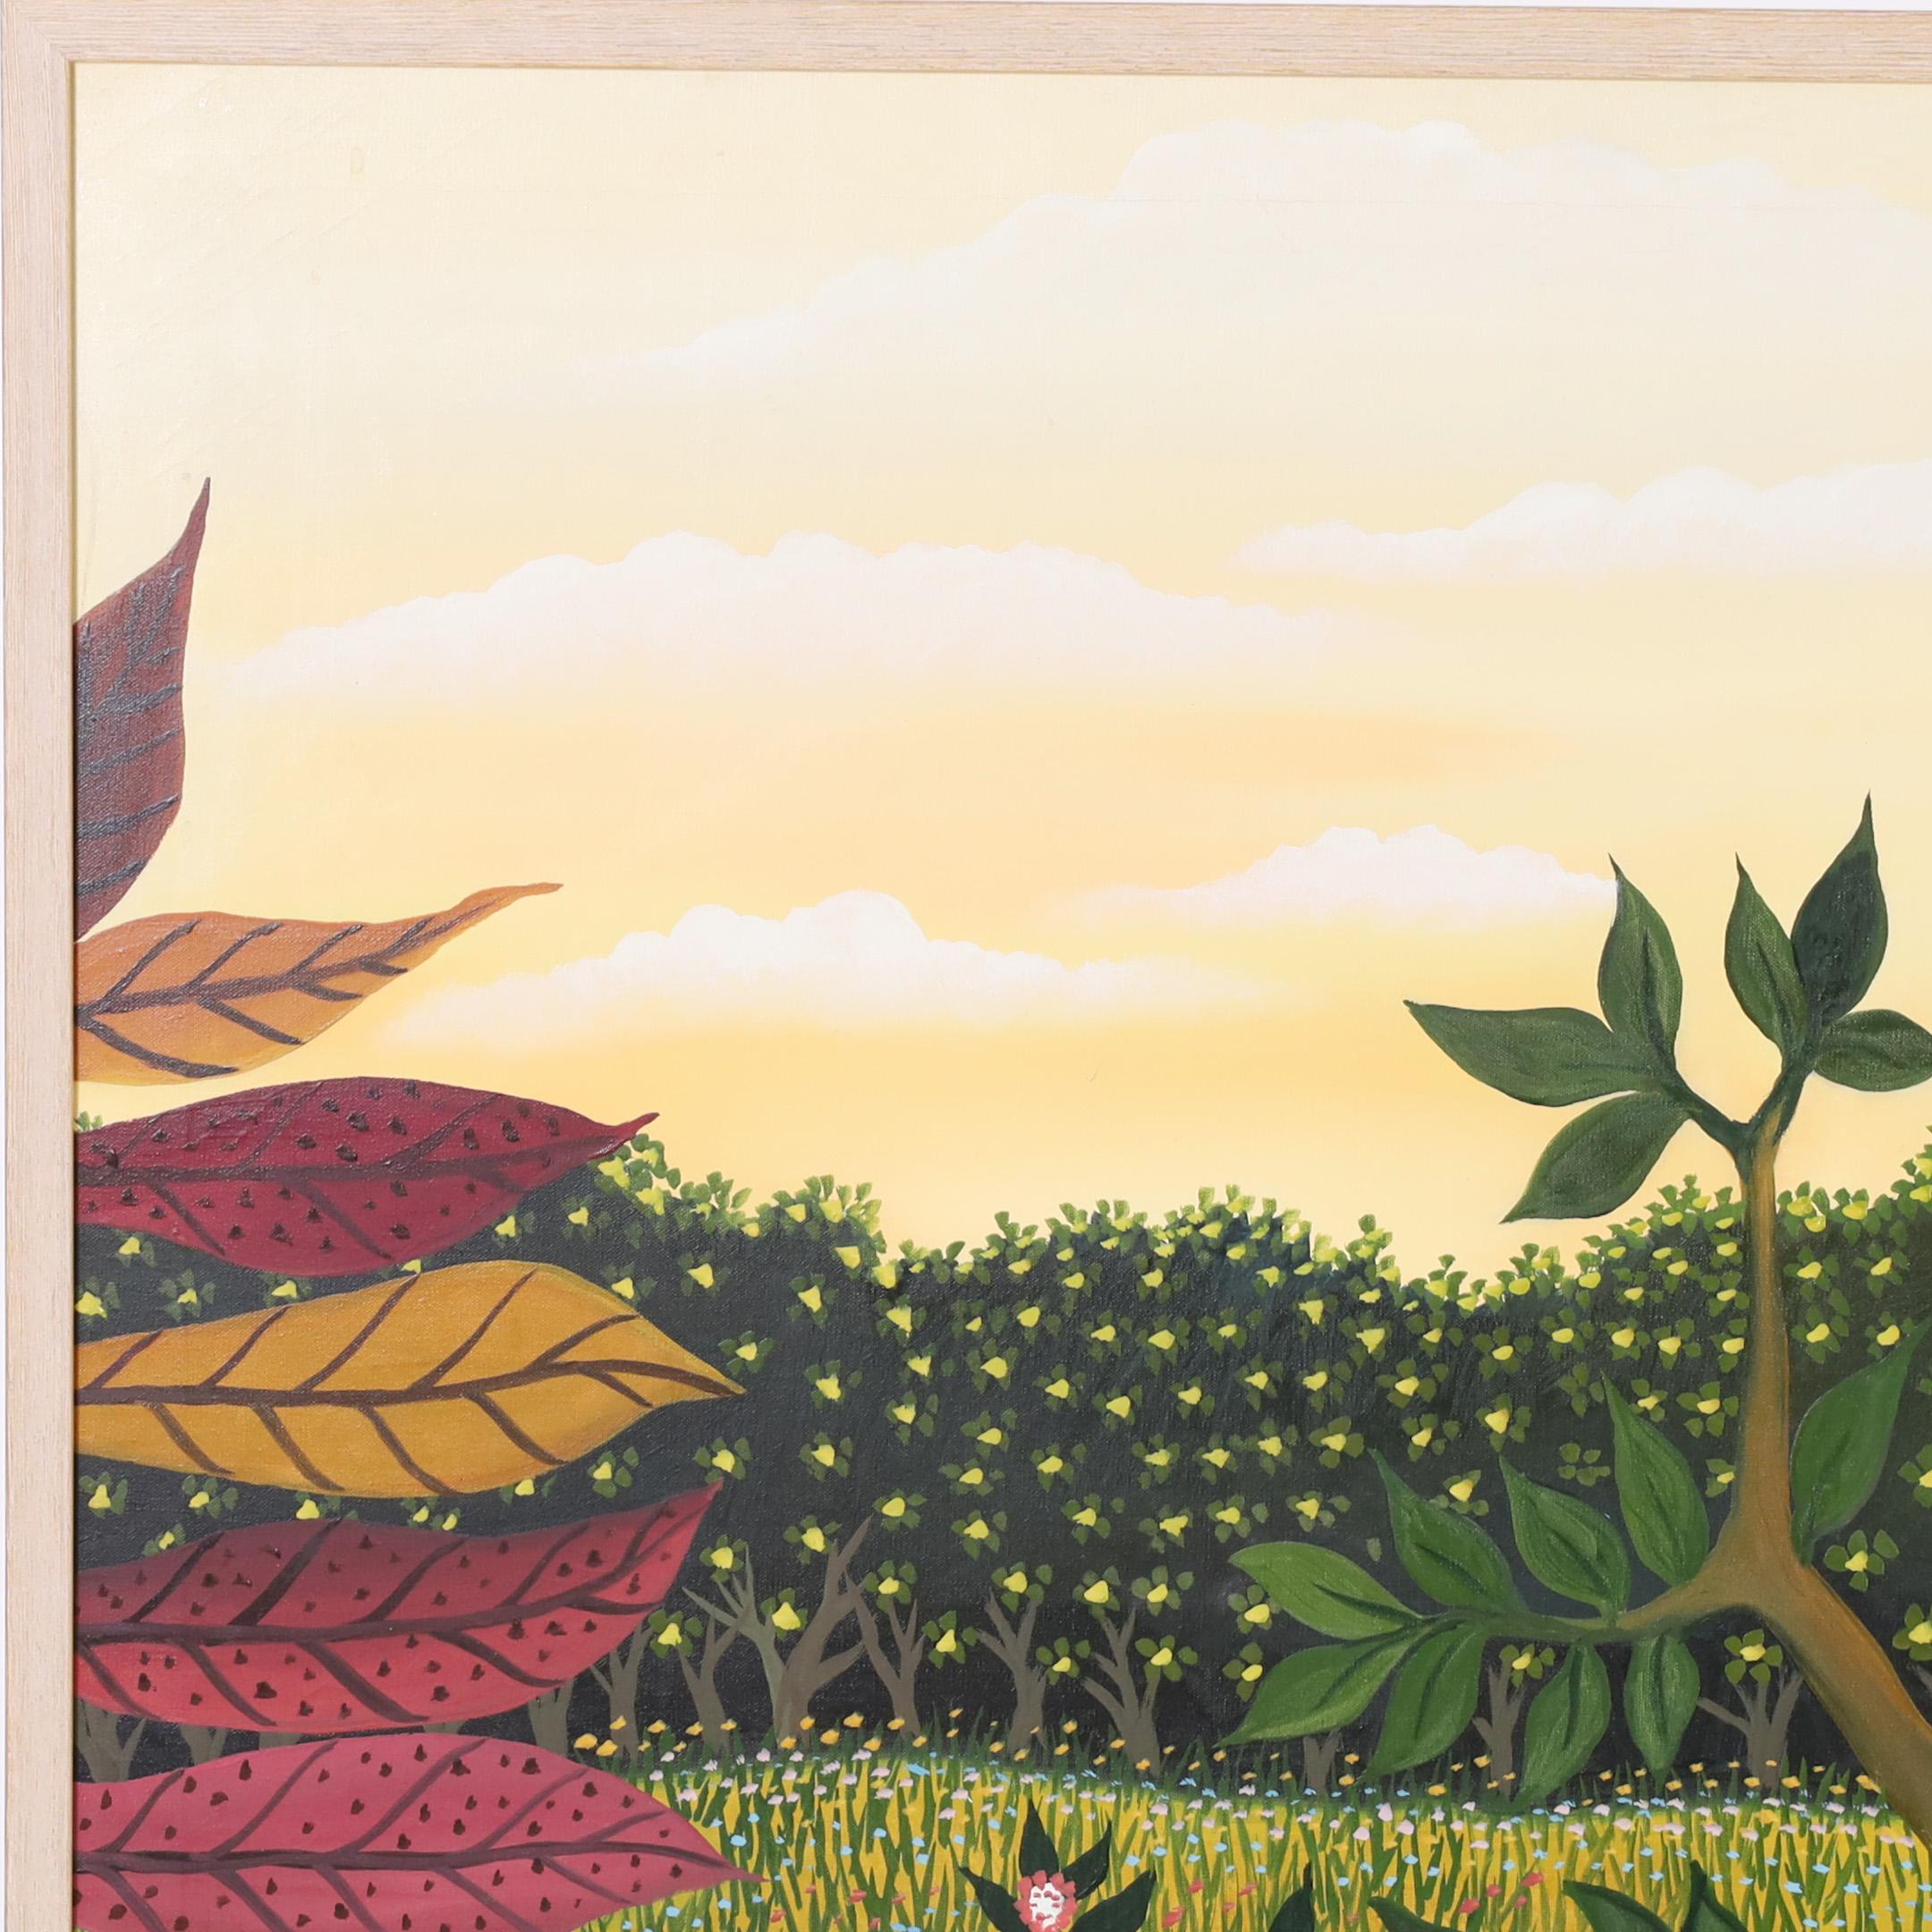 Remarquable peinture acrylique vintage sur toile représentant un léopard et un perroquet allongés dans un paysage de jungle avec des plantes tropicales, exécutée dans un style naïf distinctif. Signé 